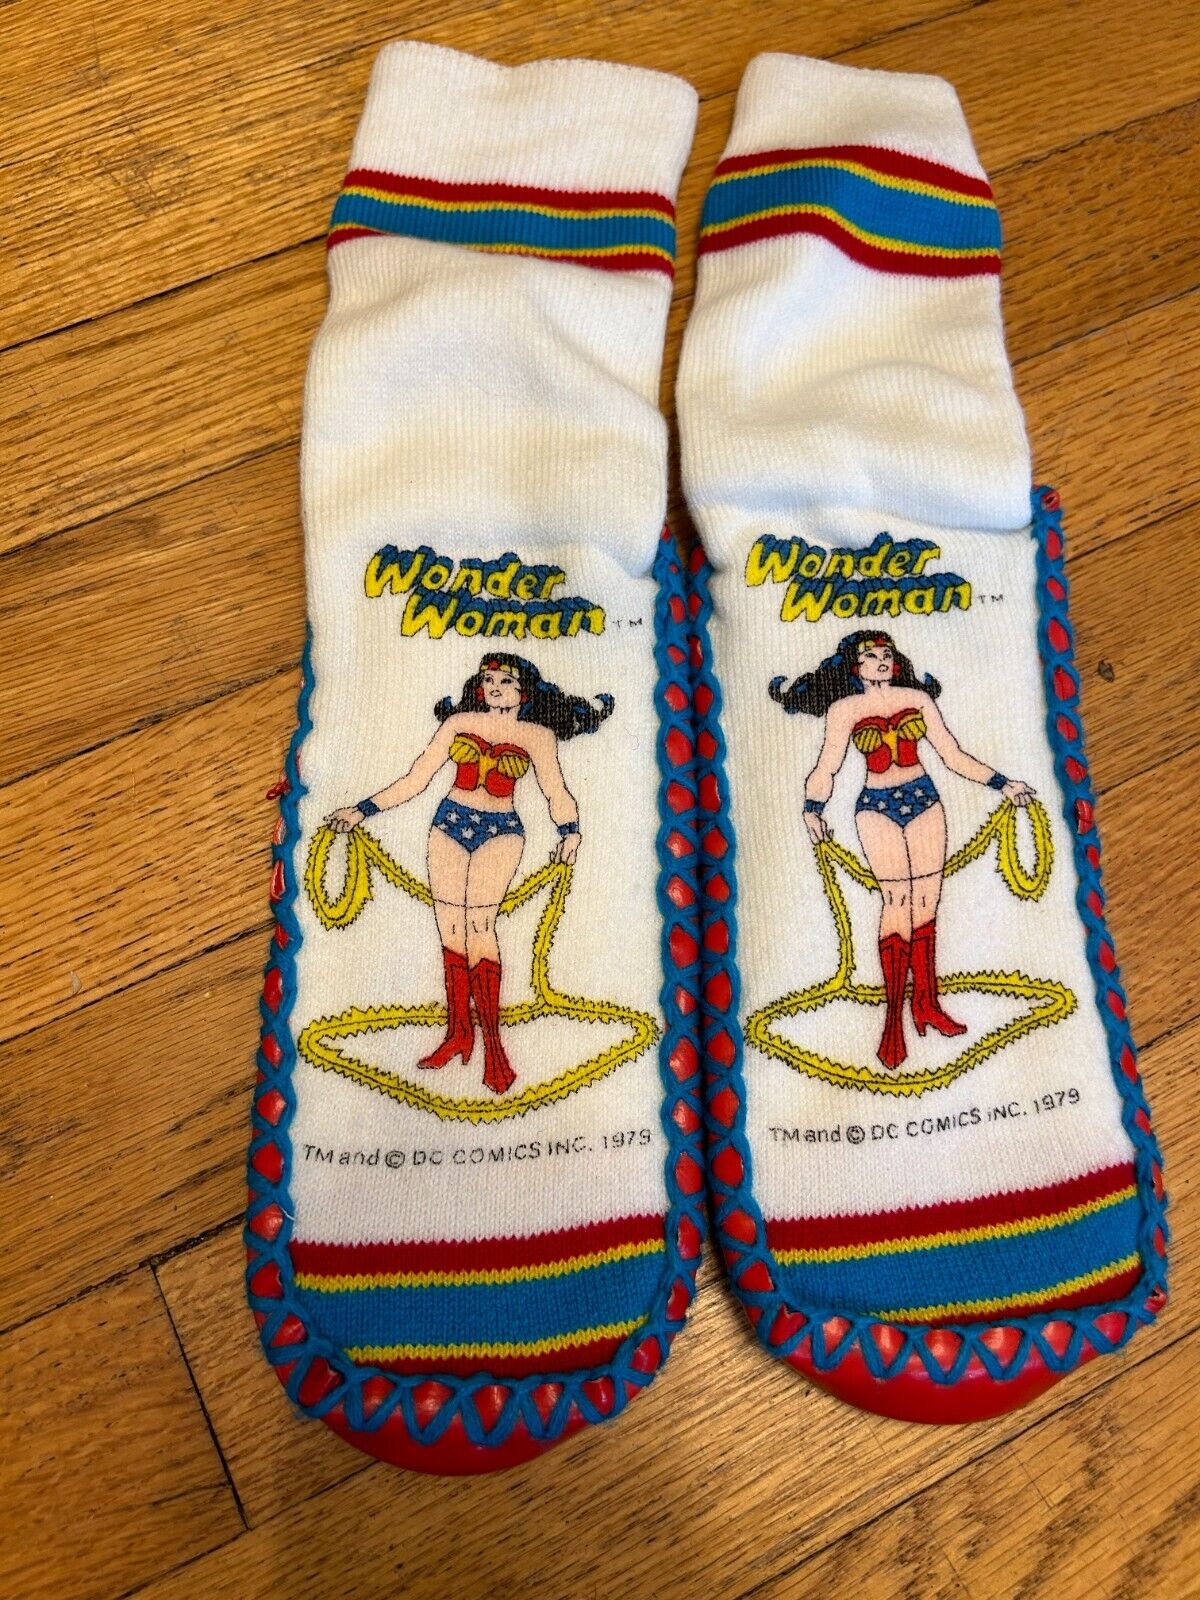 Vintage Wonder Woman Toastee Sox Slipper Socks Unused 1979 DC Comics by Dawnelle